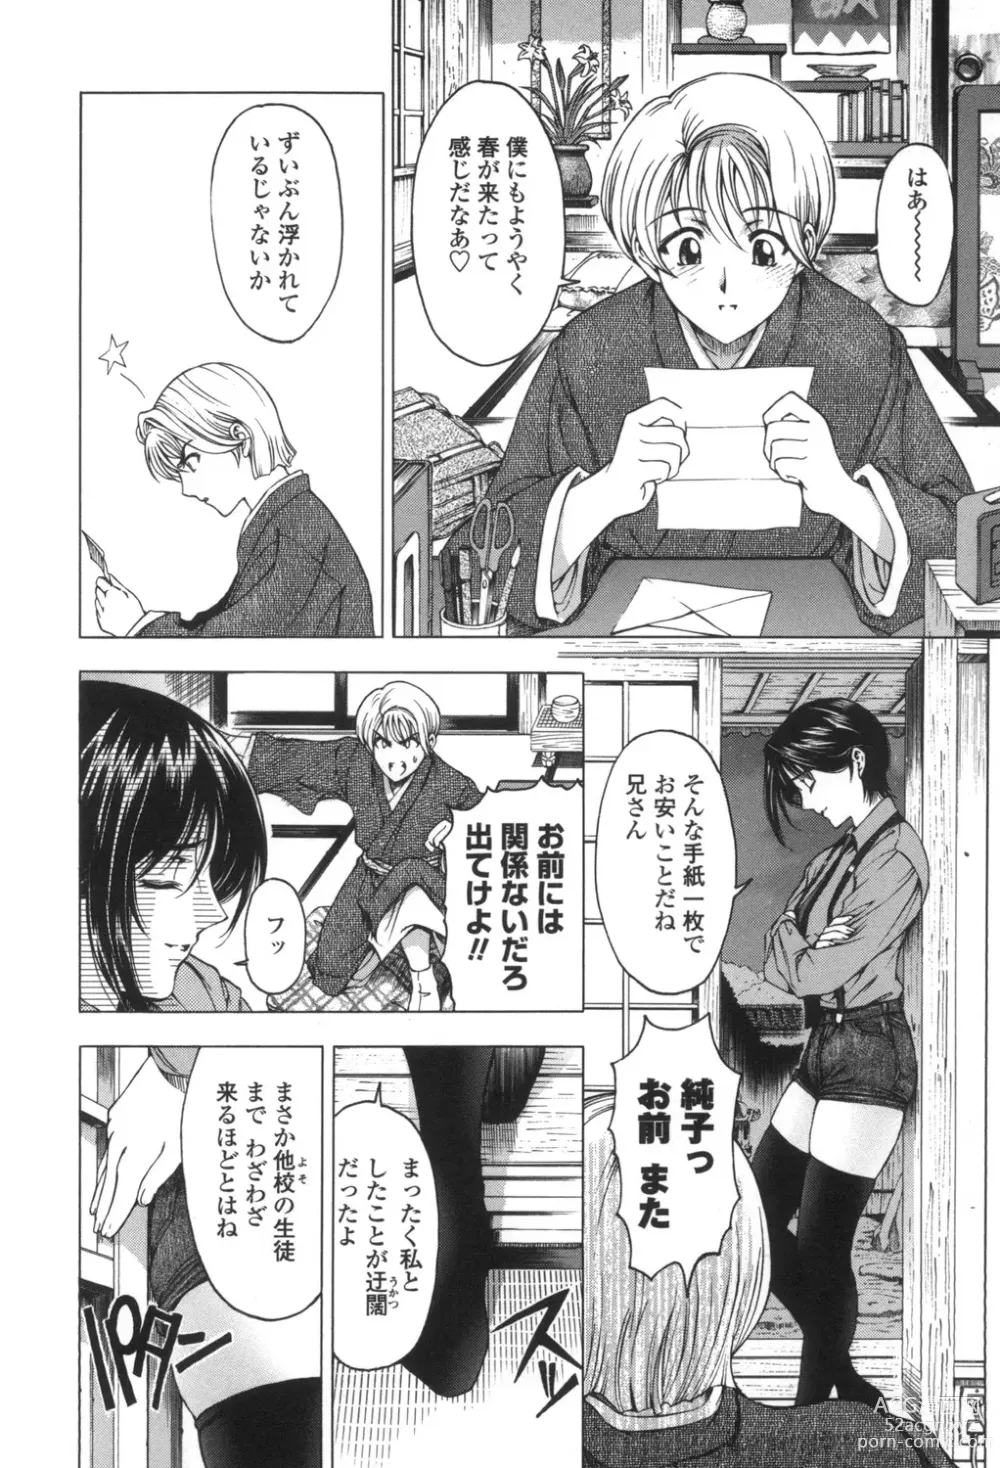 Page 13 of manga Maruimo!?